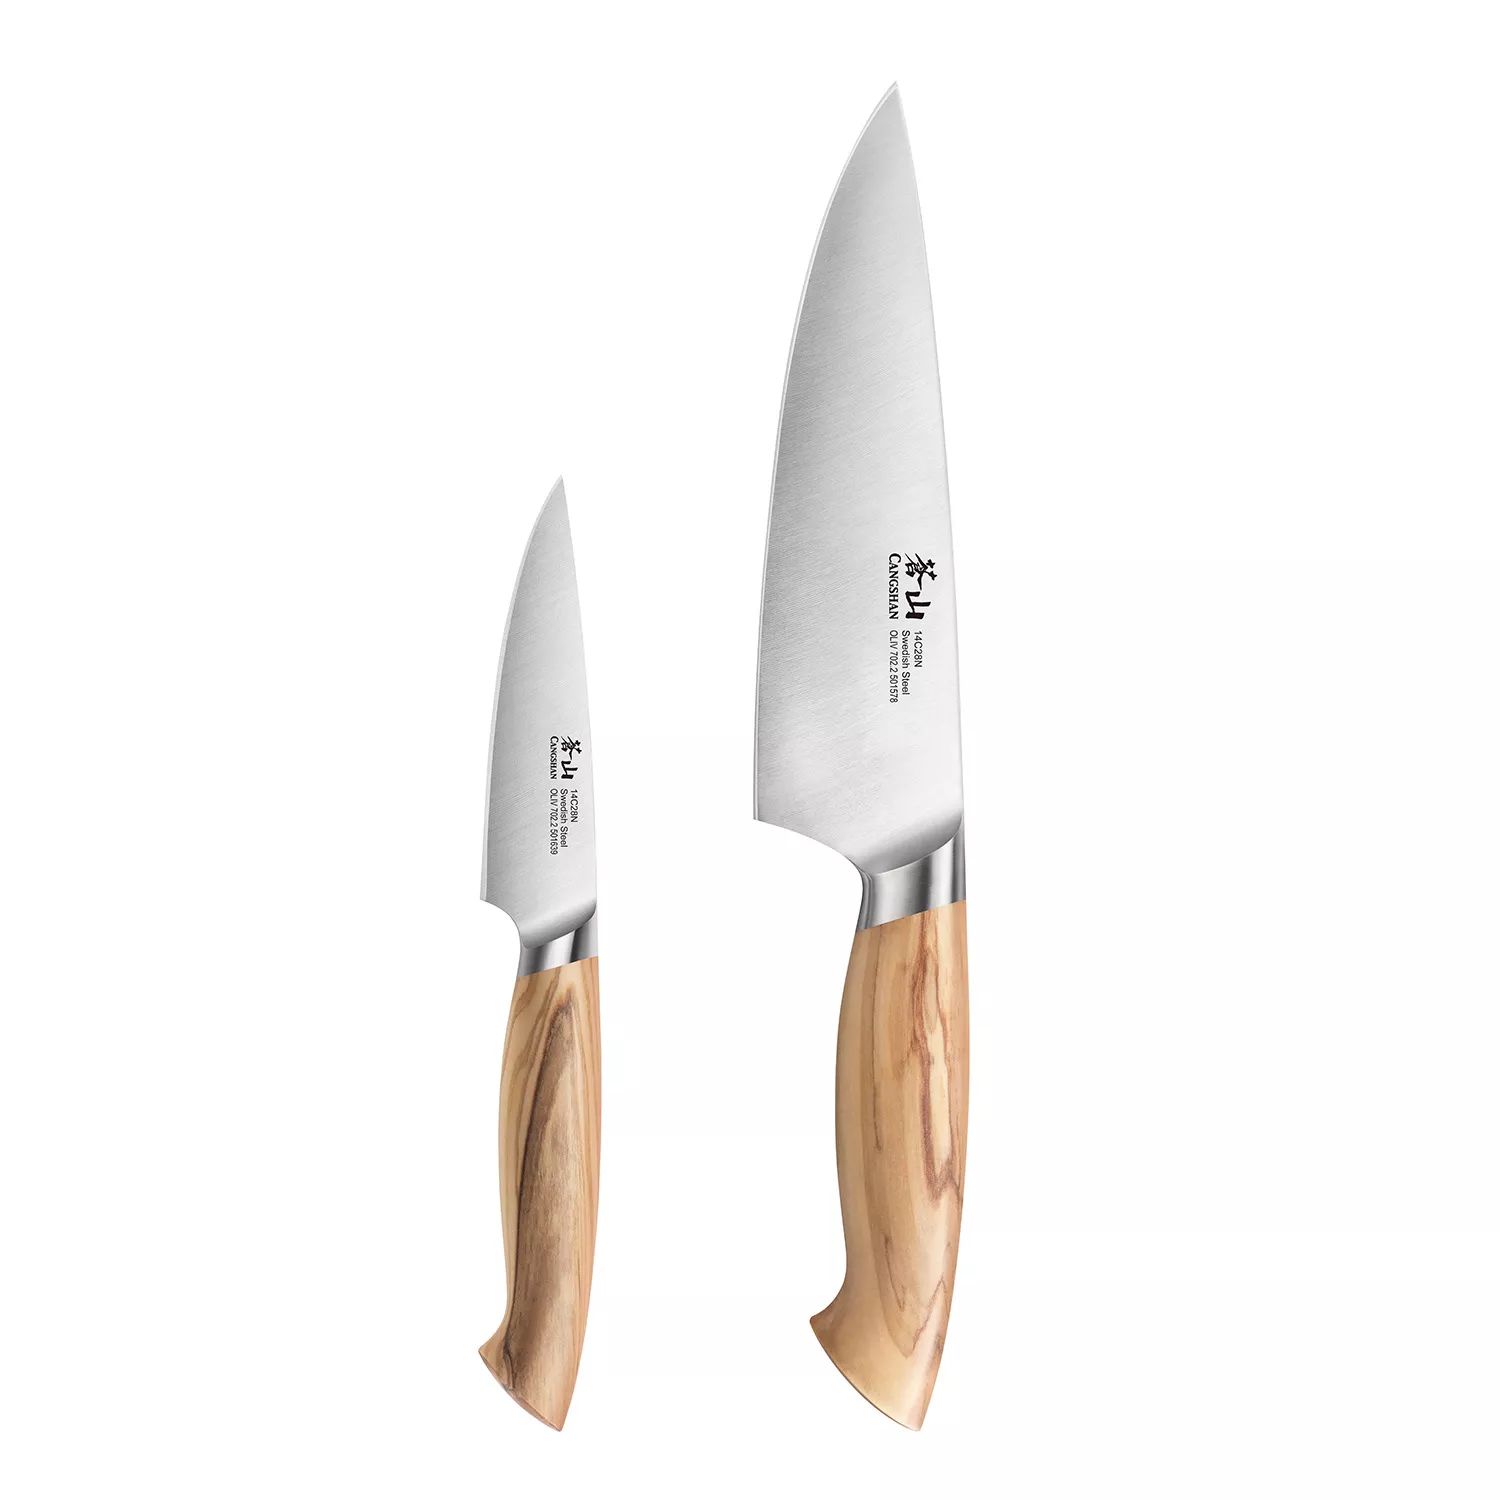 Cangshan OLIV 2-Piece Chef & Paring Knife Set | Sur La Table | Sur La Table